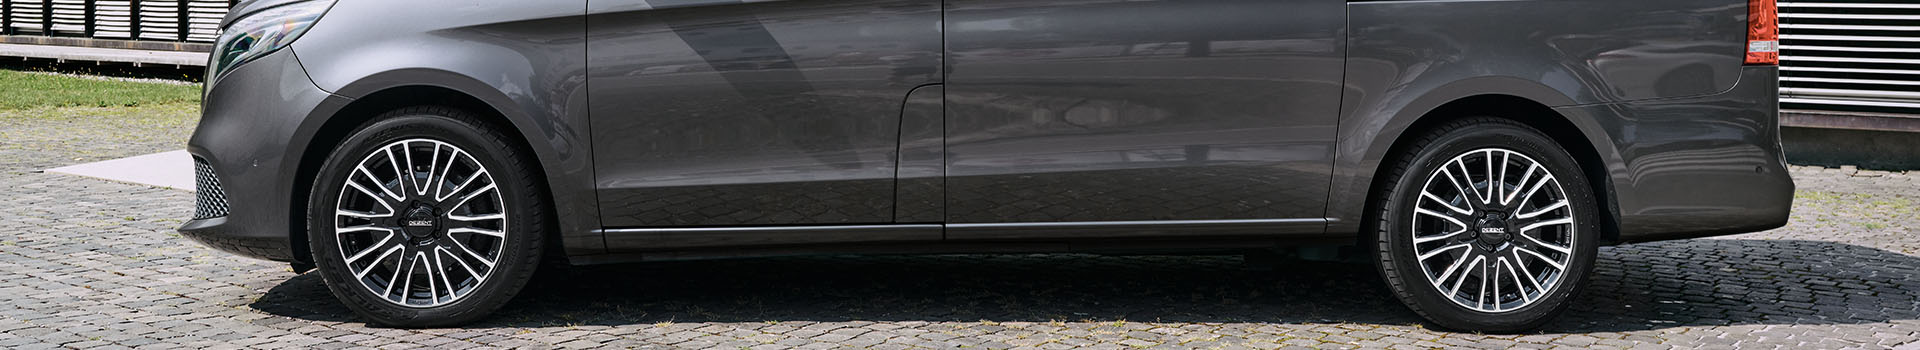 DEZENT KE dark Mercedes V-Klasse Leichtmetallräder günstige Felgen Alufelgen